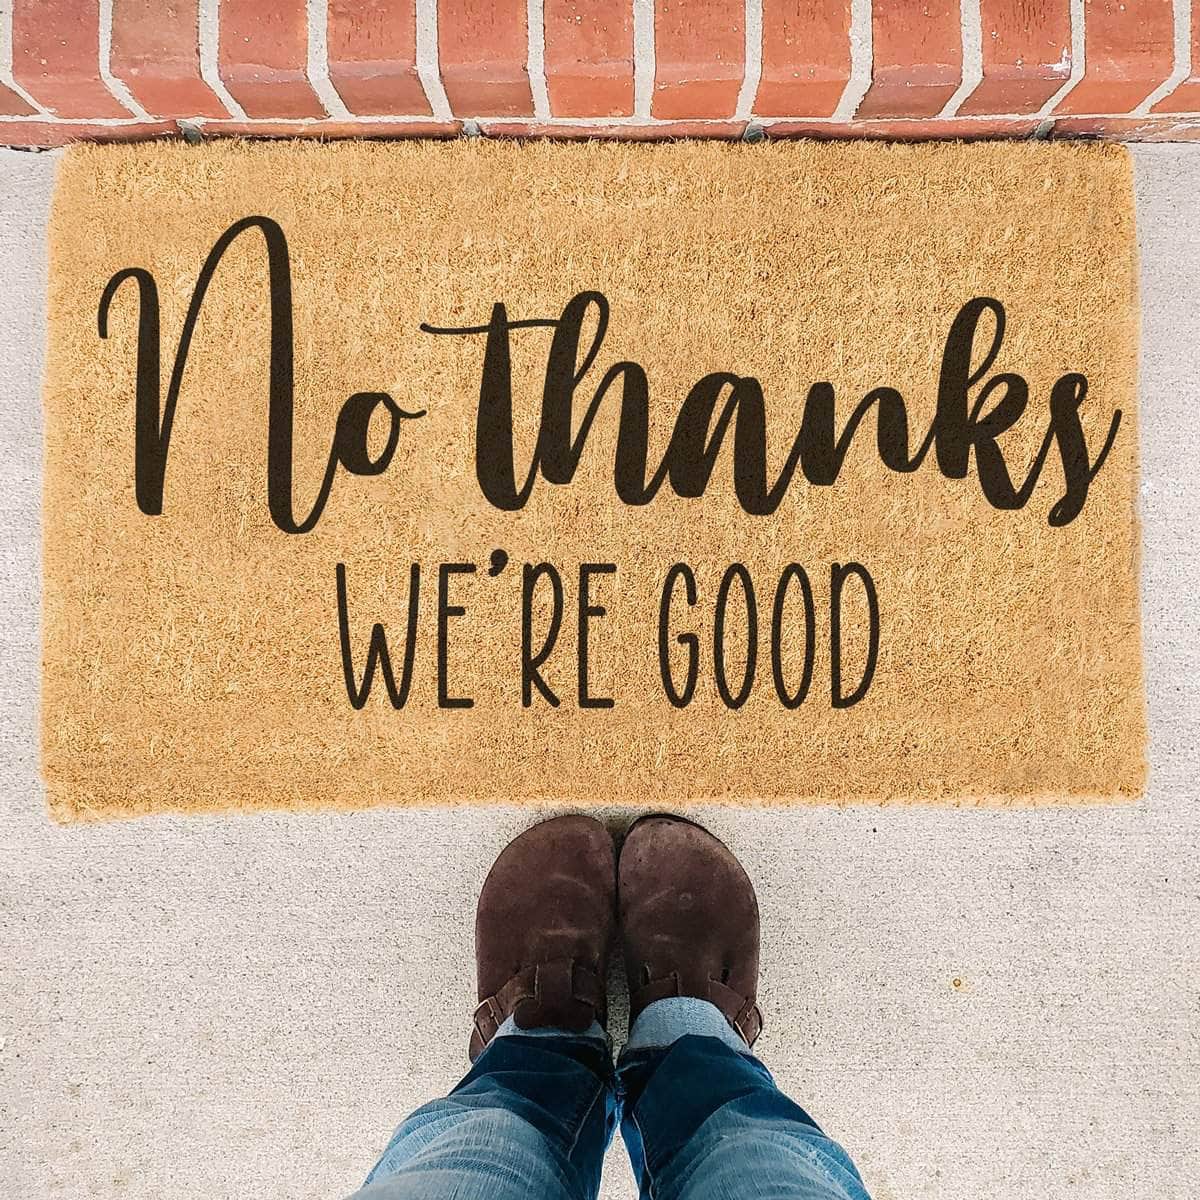 No Thanks We're Good - Doormat